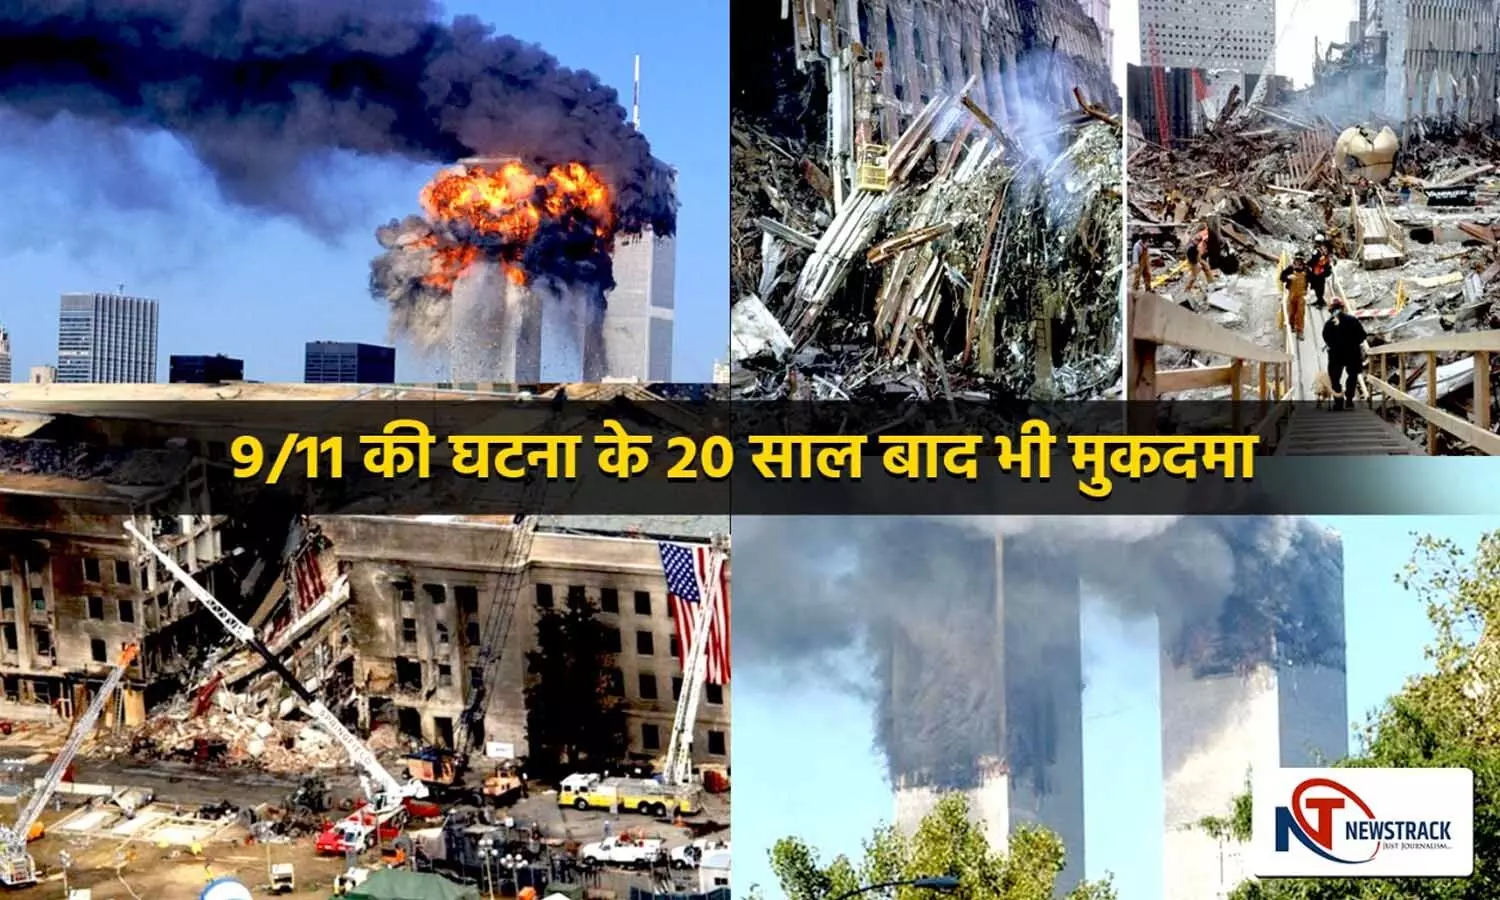 9/11 Attacks: घटना के 20 साल बाद भी जारी है साजिशकर्ताओं पर मुकदमा, जानें अब तक क्या क्या हुआ